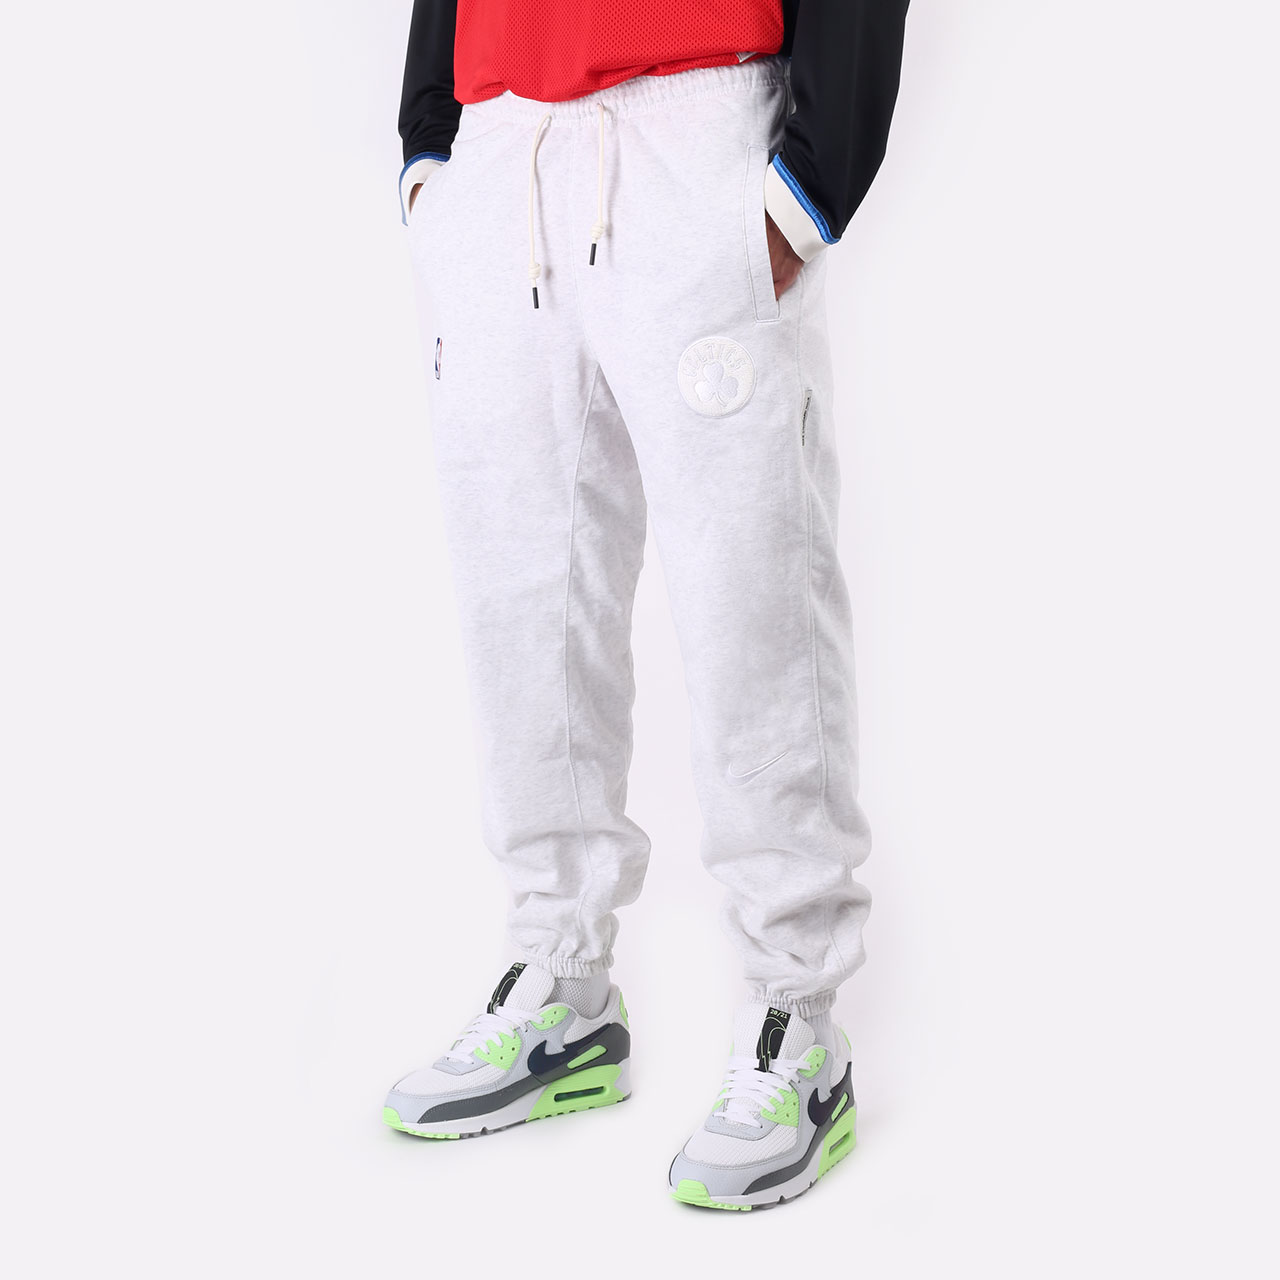 мужские серые брюки Nike Boston Celtics Standard Issue DB0941-051 - цена, описание, фото 1